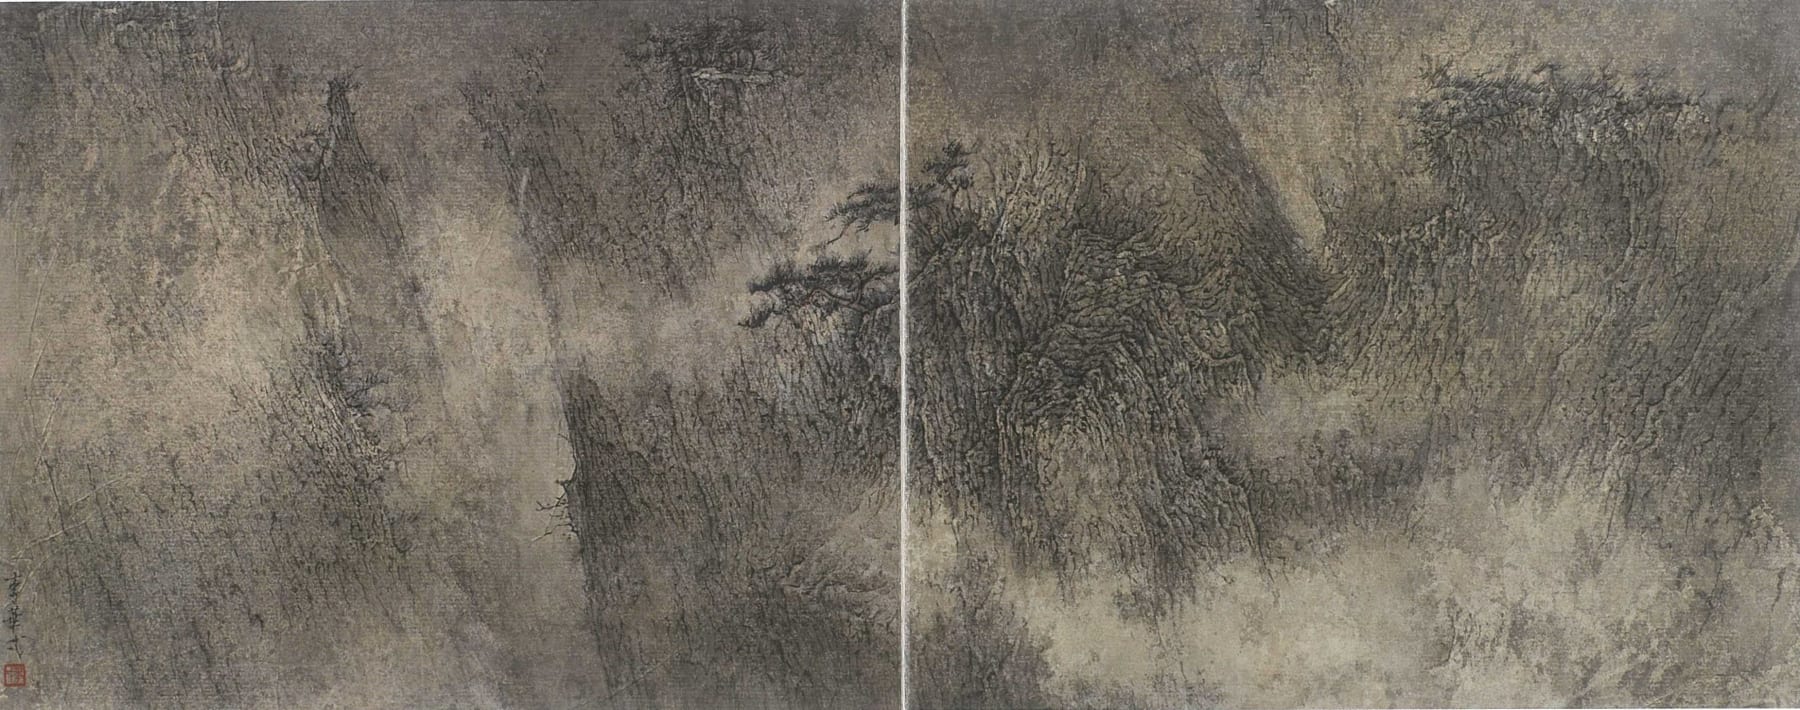 Li Huayi 李華弌, Mist in Valley 《雲漫靈谿》, 2012